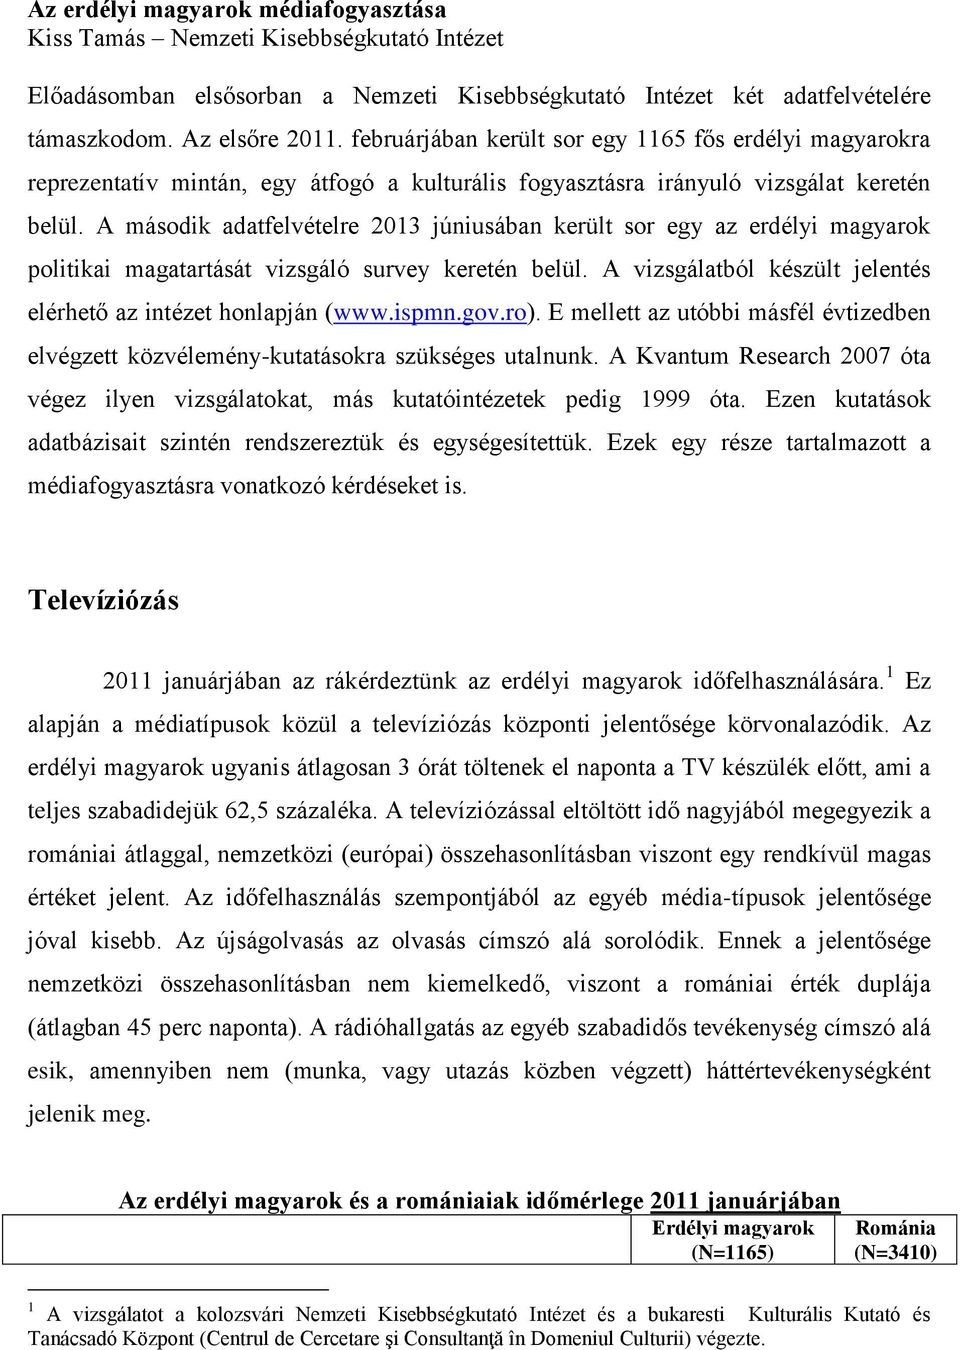 A második adatfelvételre 2013 júniusában került sor egy az erdélyi magyarok politikai magatartását vizsgáló survey keretén belül. A vizsgálatból készült jelentés elérhető az intézet honlapján (www.